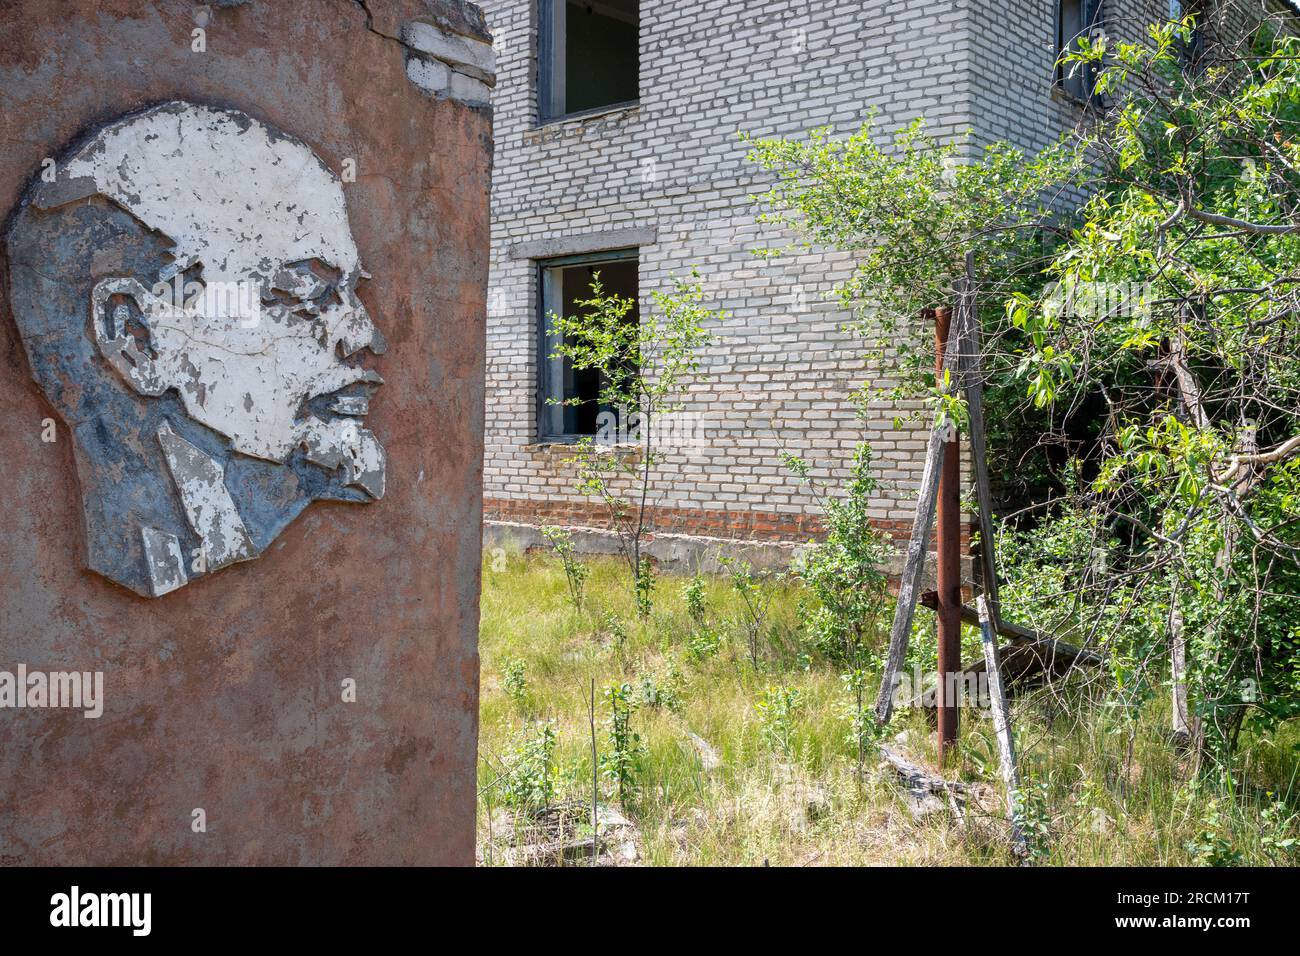 Image de Lénine dans la zone d'exclusion de la Biélorussie sur fond d'un bâtiment abandonné Banque D'Images